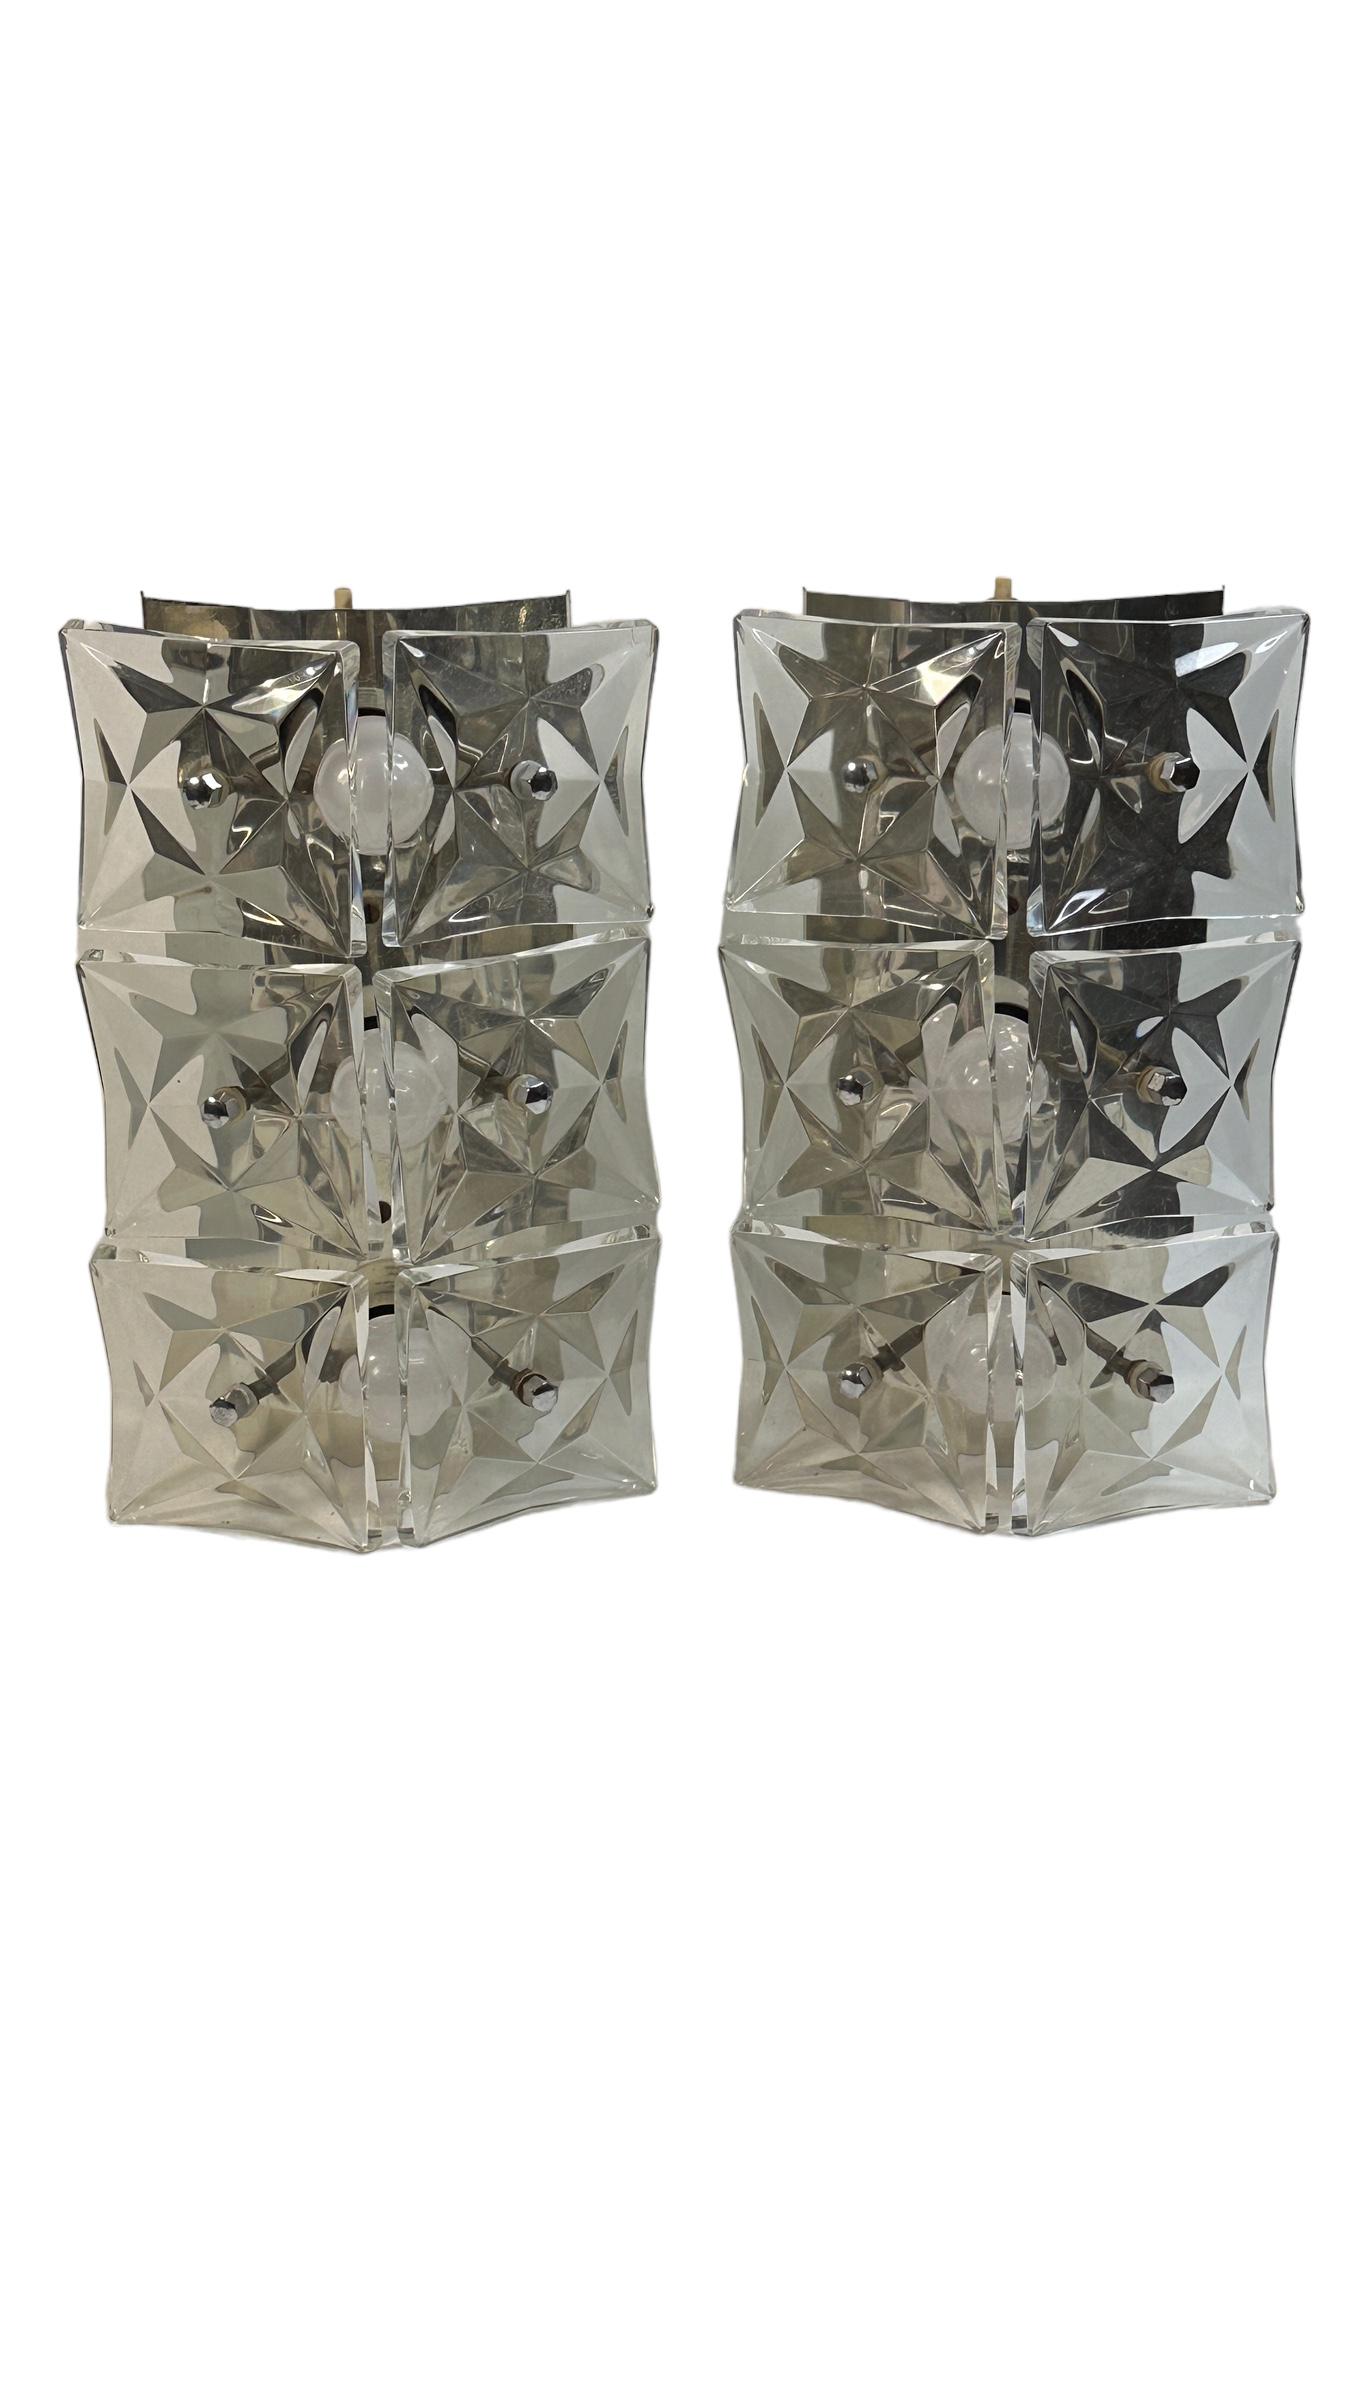 Elegantes Paar beeindruckender großer Wandleuchten mit Kristallglasscheiben. Jeweils aus verchromtem Metall und Glas. Jede Leuchte benötigt drei europäische E14-Glühbirnen mit jeweils bis zu 40 Watt. Eine schöne Ergänzung für jeden Raum. Die auf den